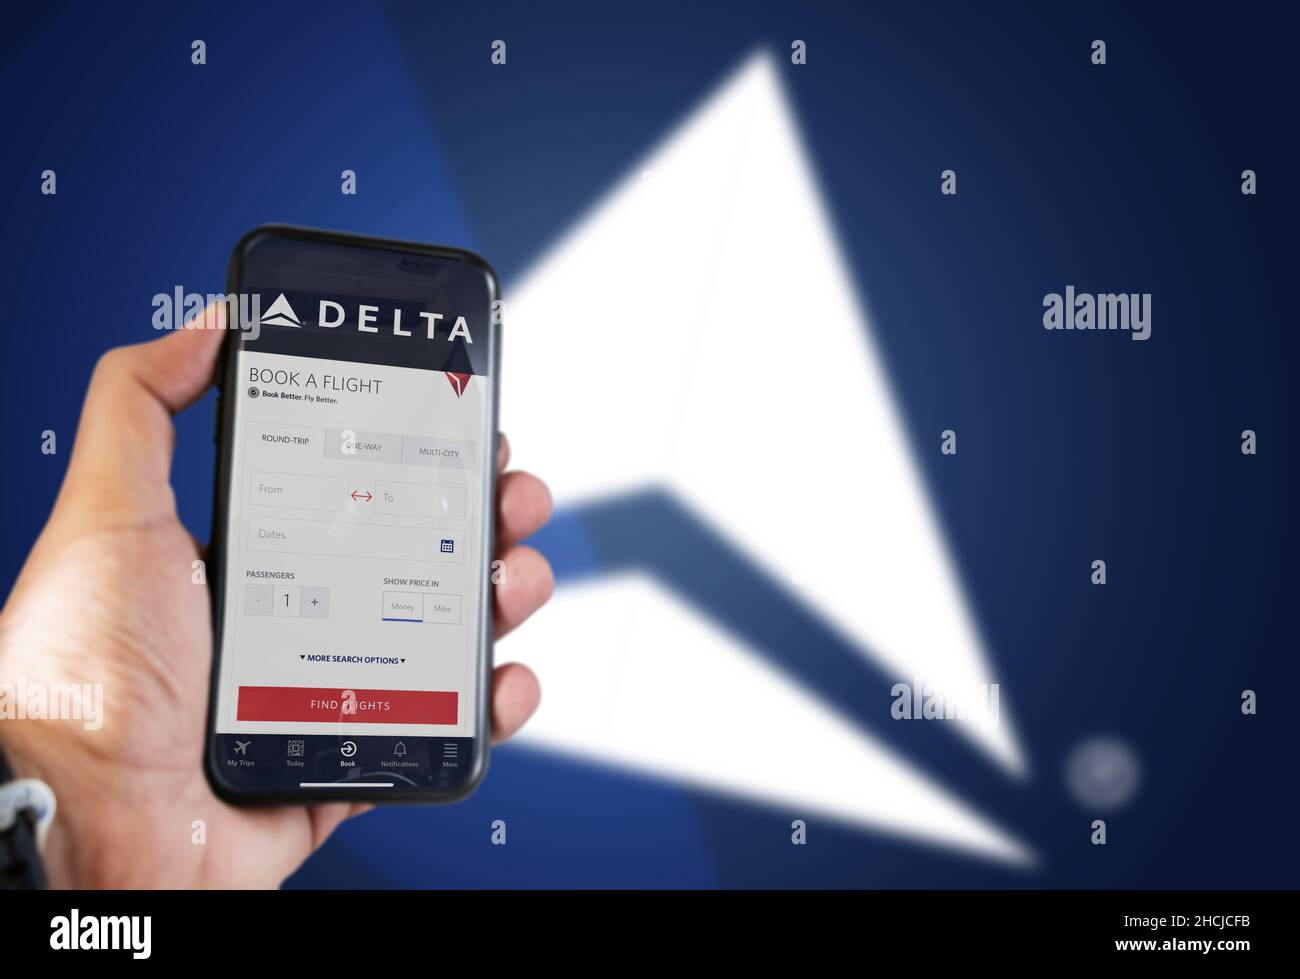 Atlanta, USA, ottobre 2021: Tenere a mano un telefono con la richiesta di prenotazione dei voli Delta Airlines. Logo Delta sfocato su sfondo blu. Delta Airlin Foto Stock